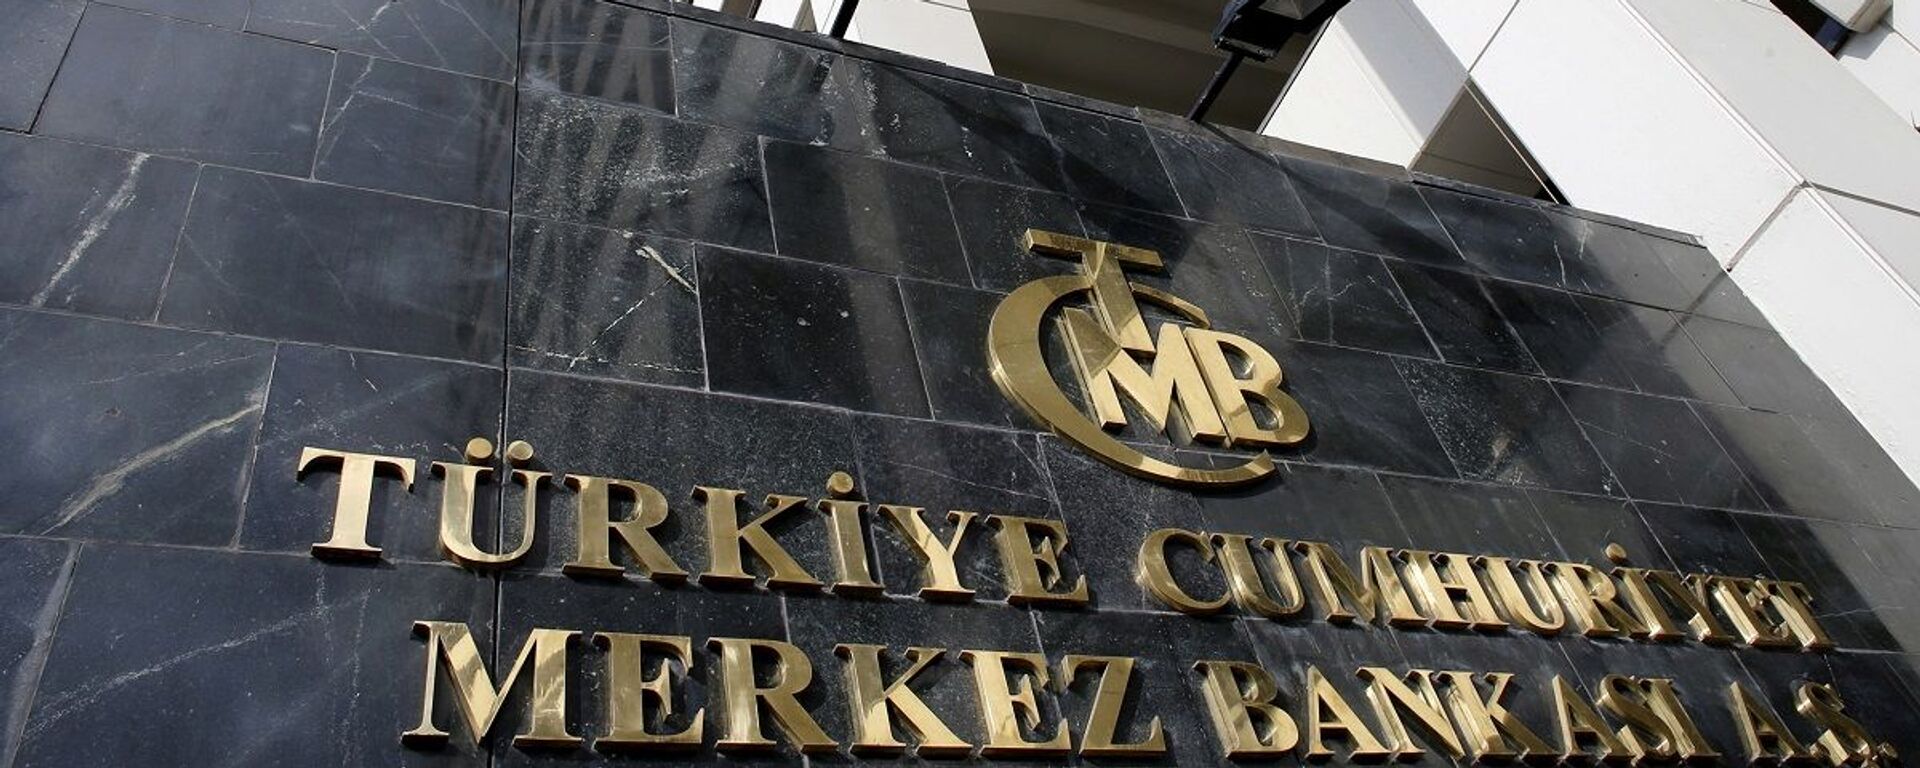 Merkez Bankası - Sputnik Türkiye, 1920, 24.12.2021